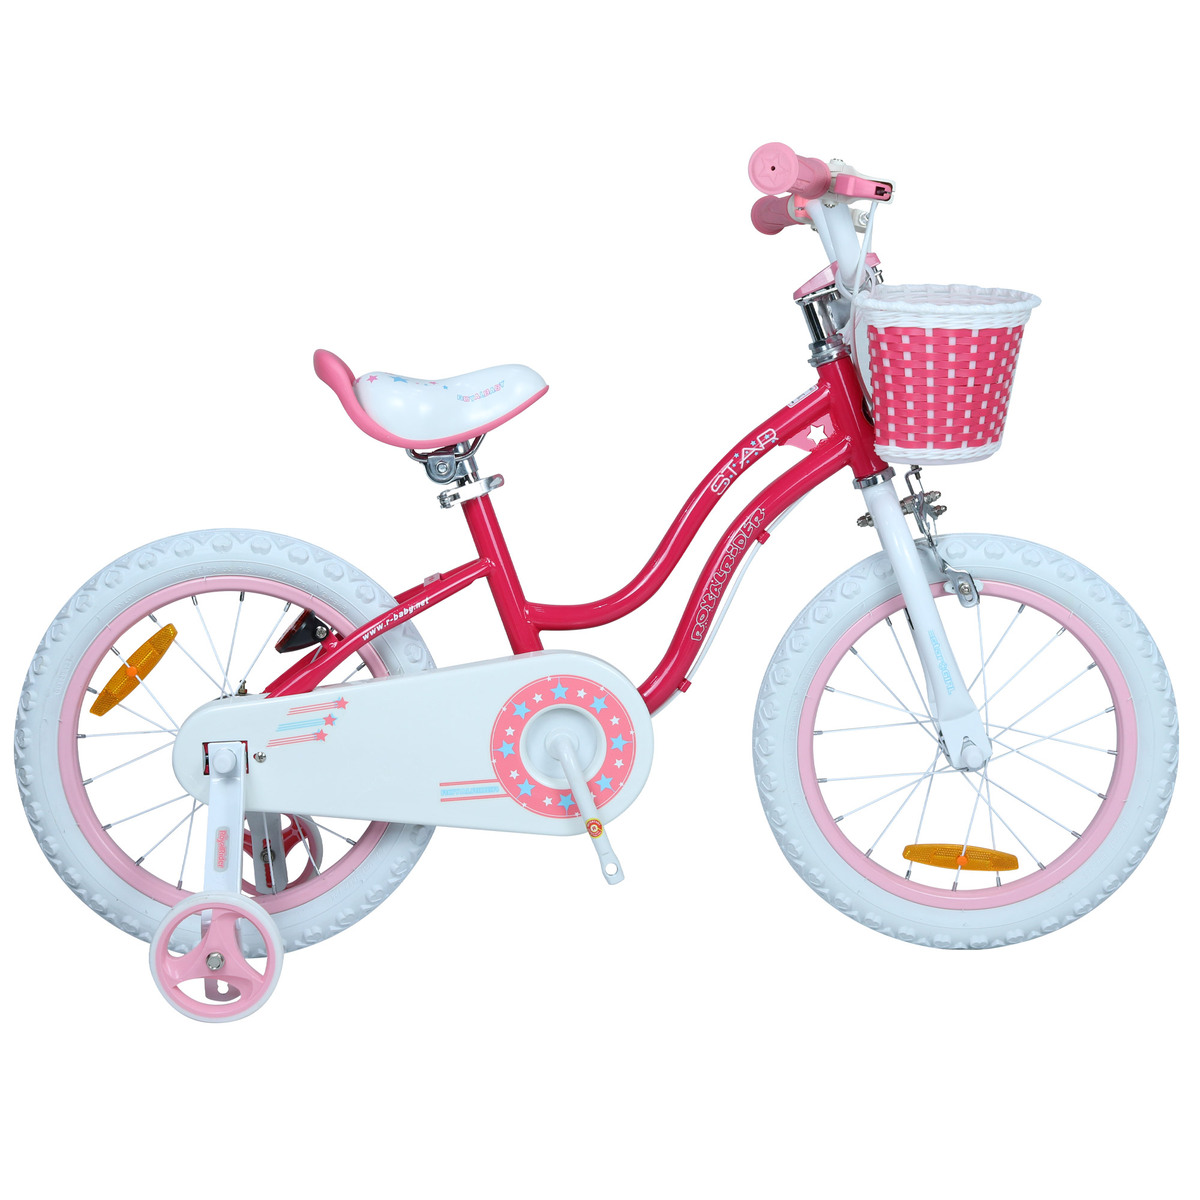 로얄베이비 스타 걸즈 자전거 46cm(18) - 핑크